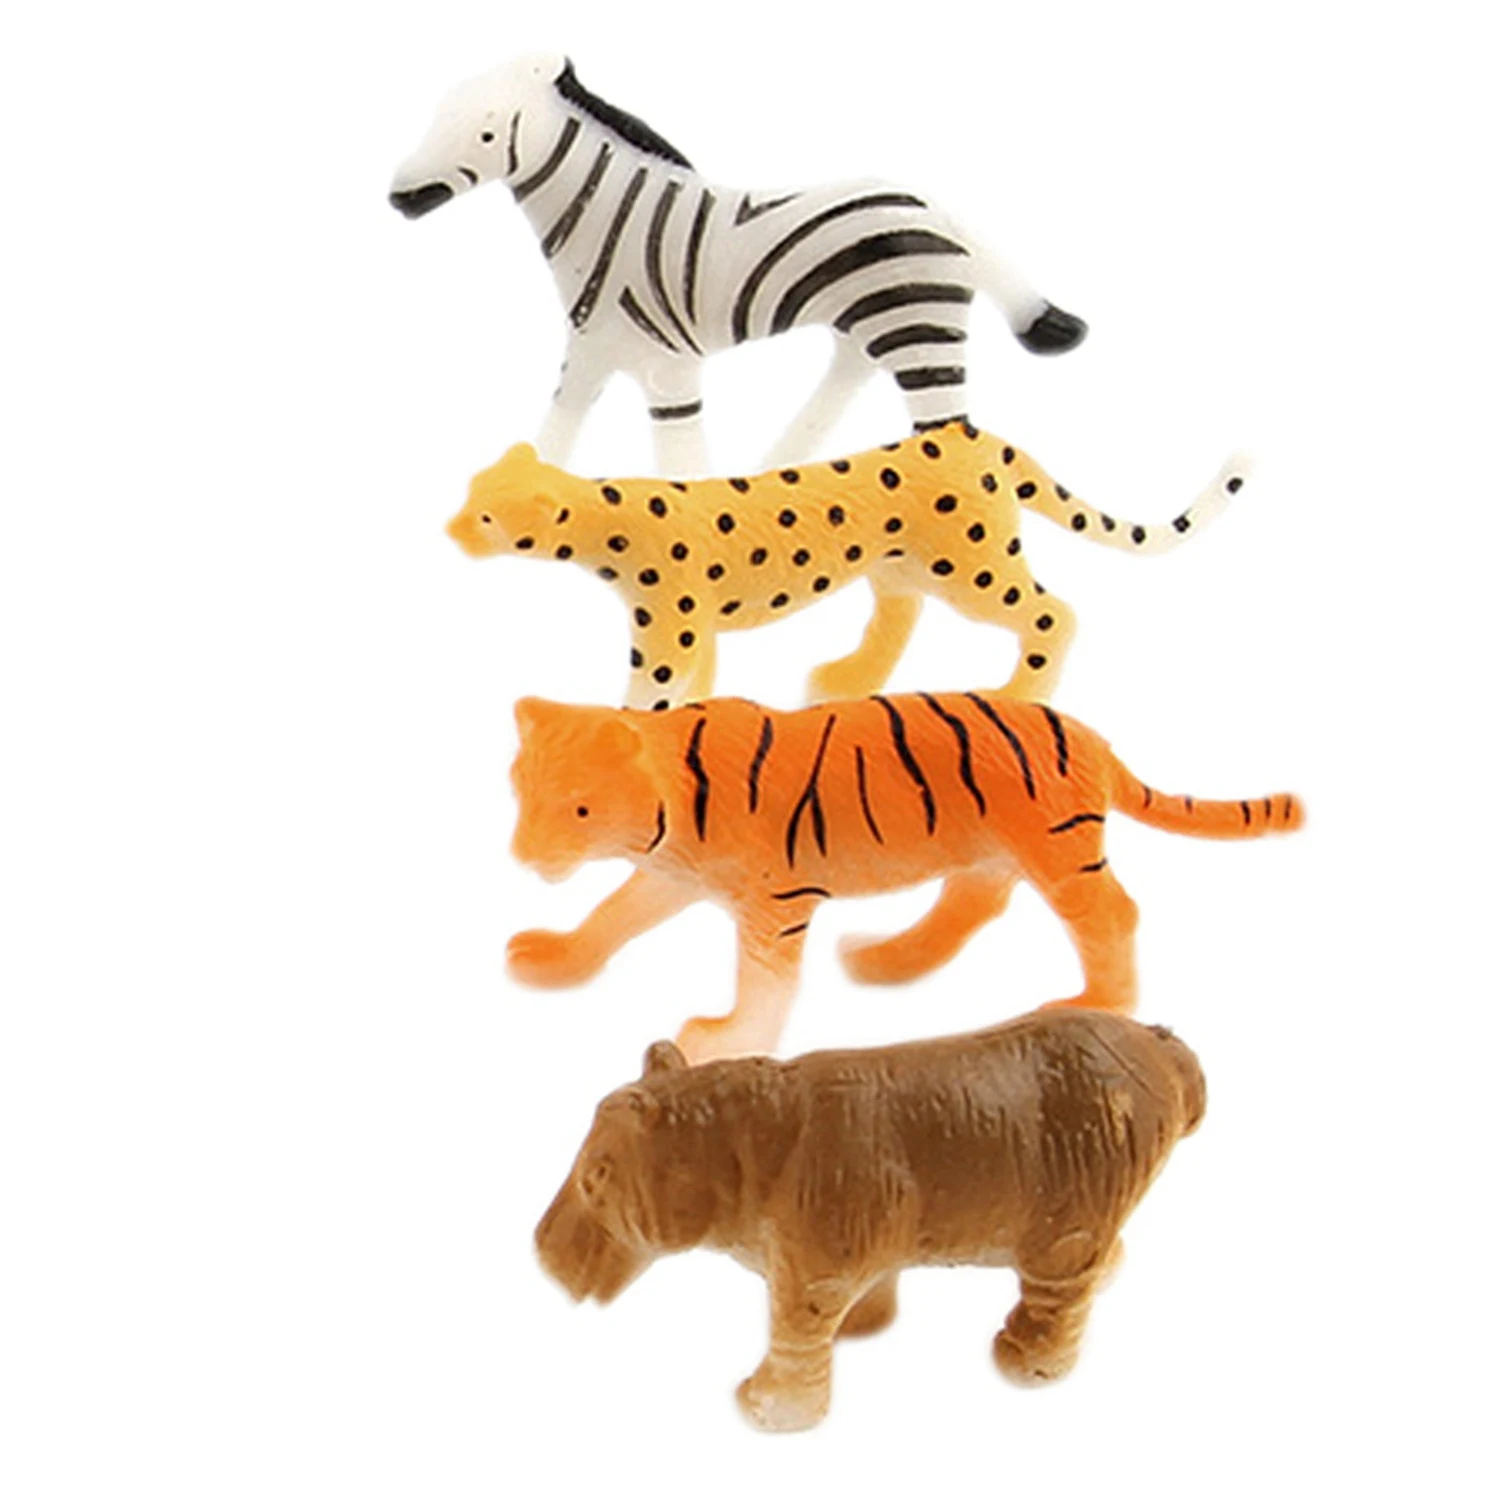 Игровой набор животных из зоопарка 12 шт. пластиковая фигурка животного, модель, тигр, леопард, бегемот, жираф, детские игрушки